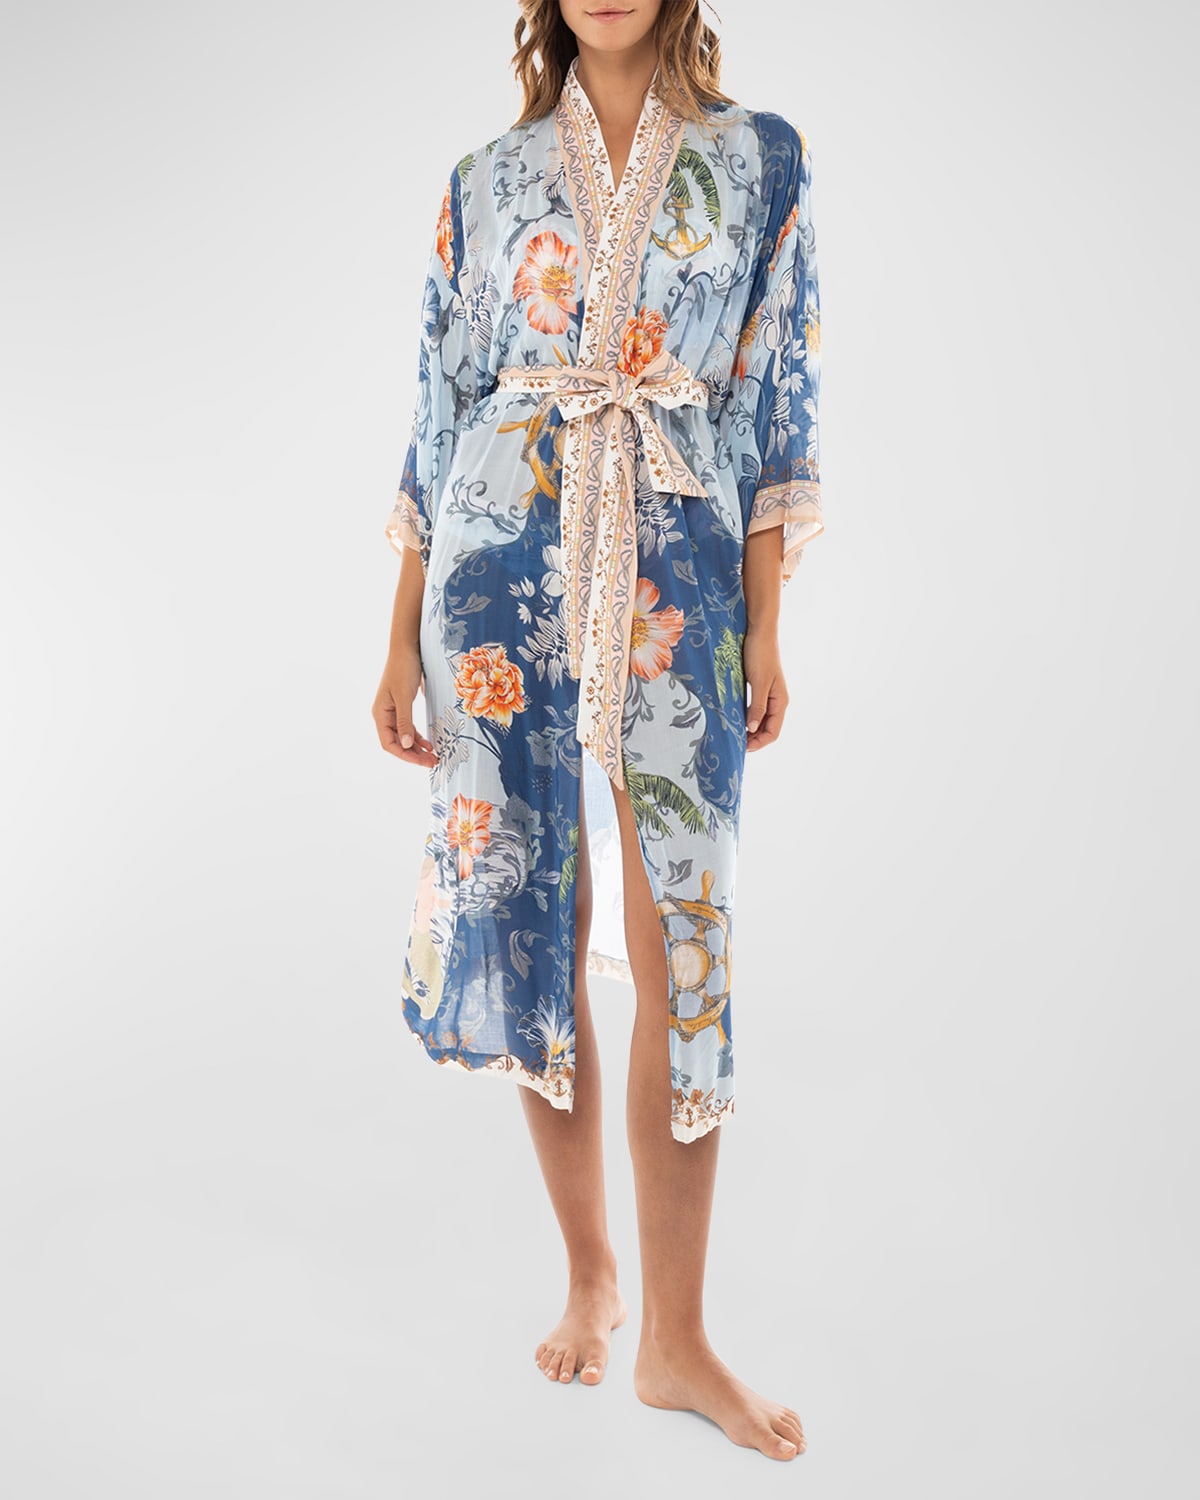 Cora Dreamin Kimono Coverup